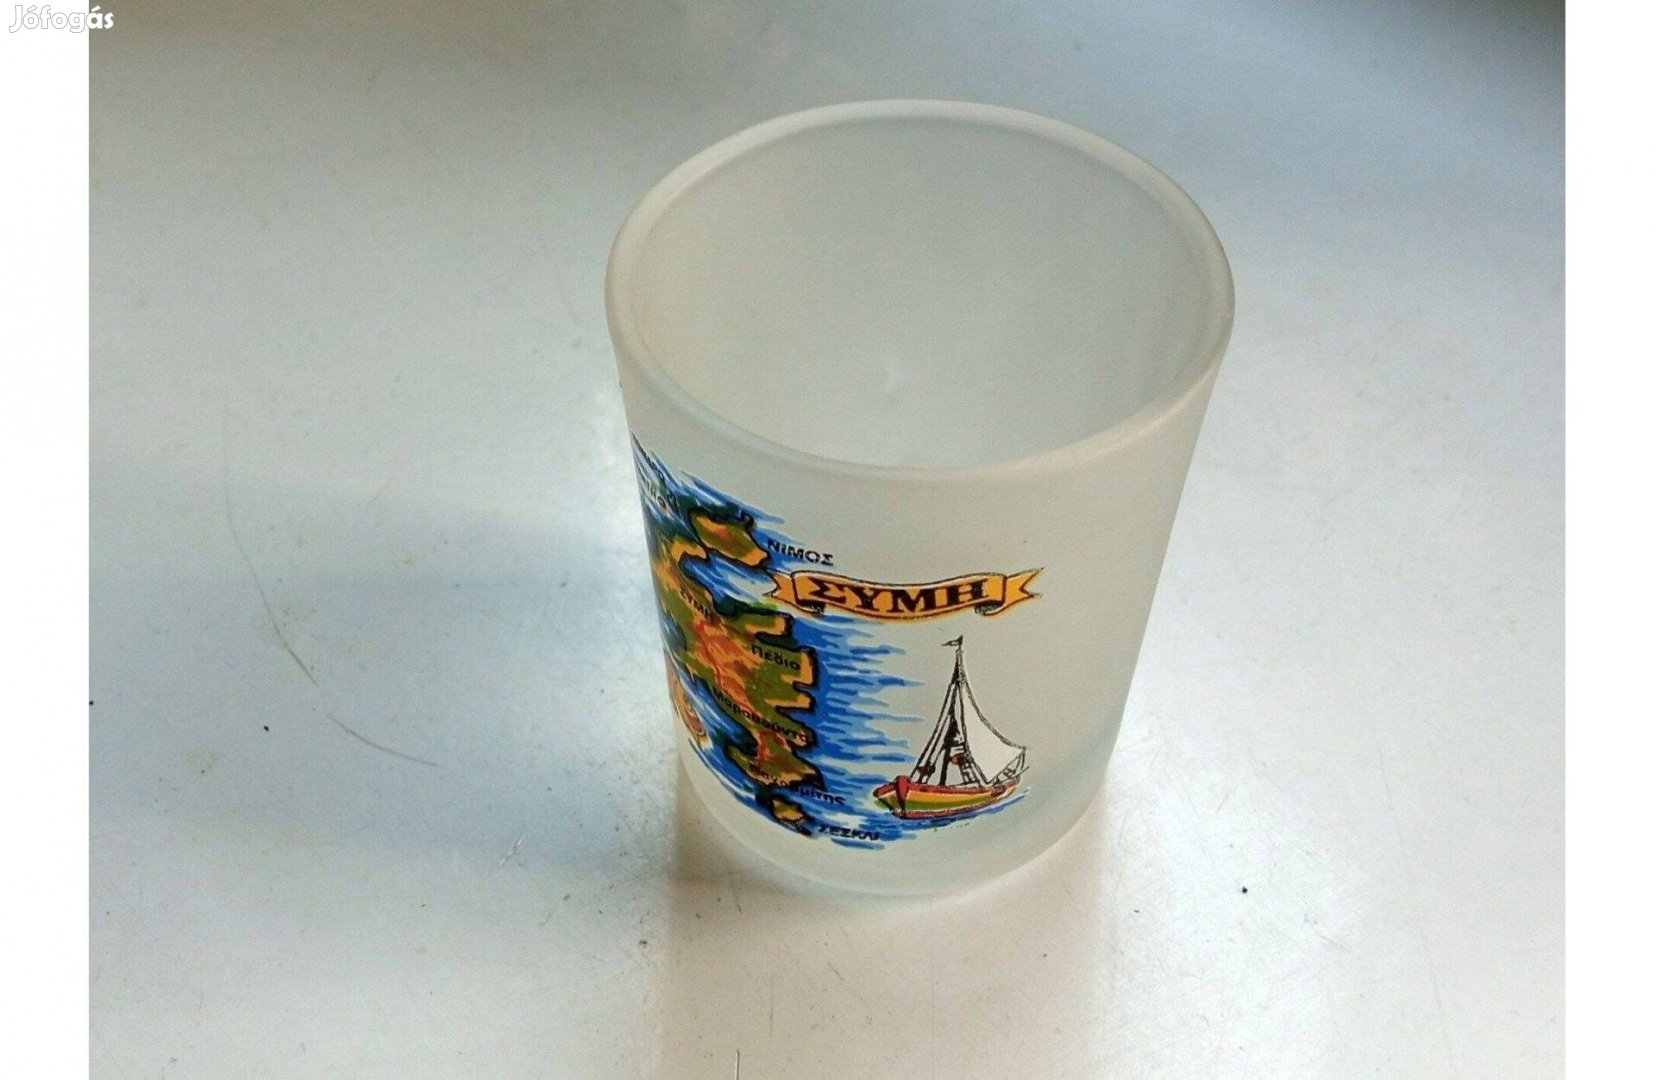 Pálinkás, stampedlis pohár Görögországból, homokfúvott üvegből